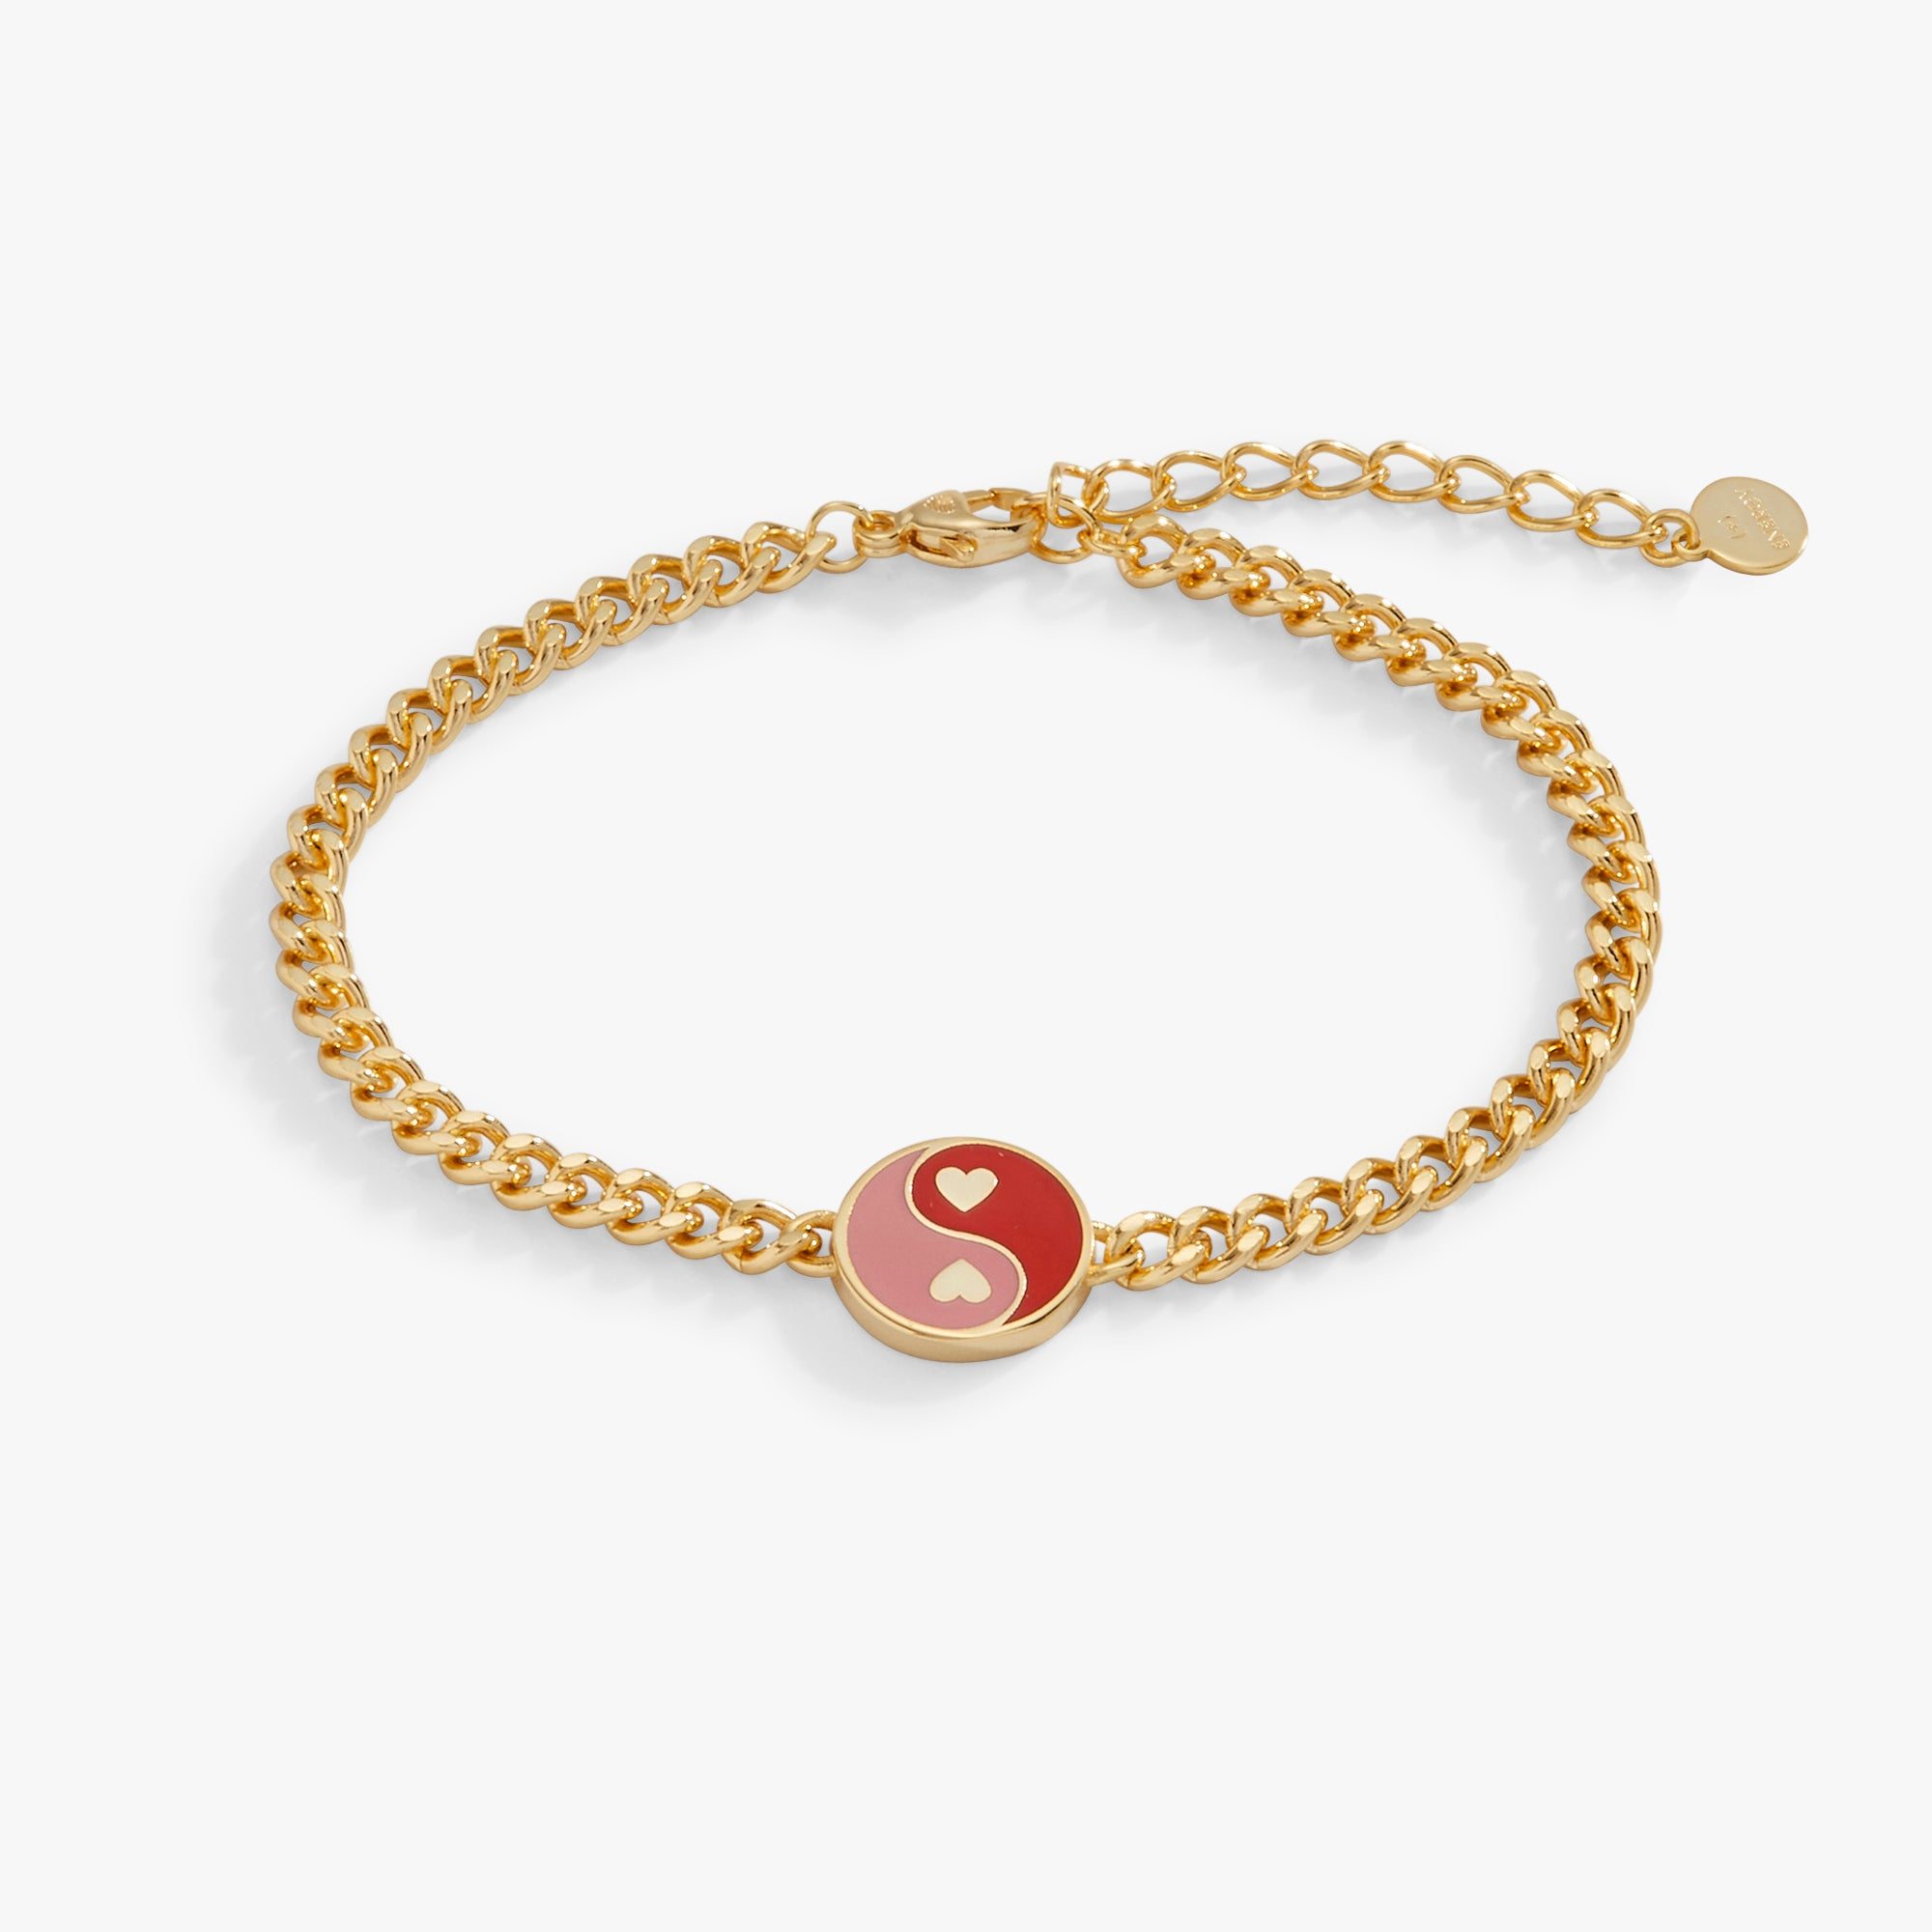 Yin Yang Heart Chain Bracelet, Adjustable